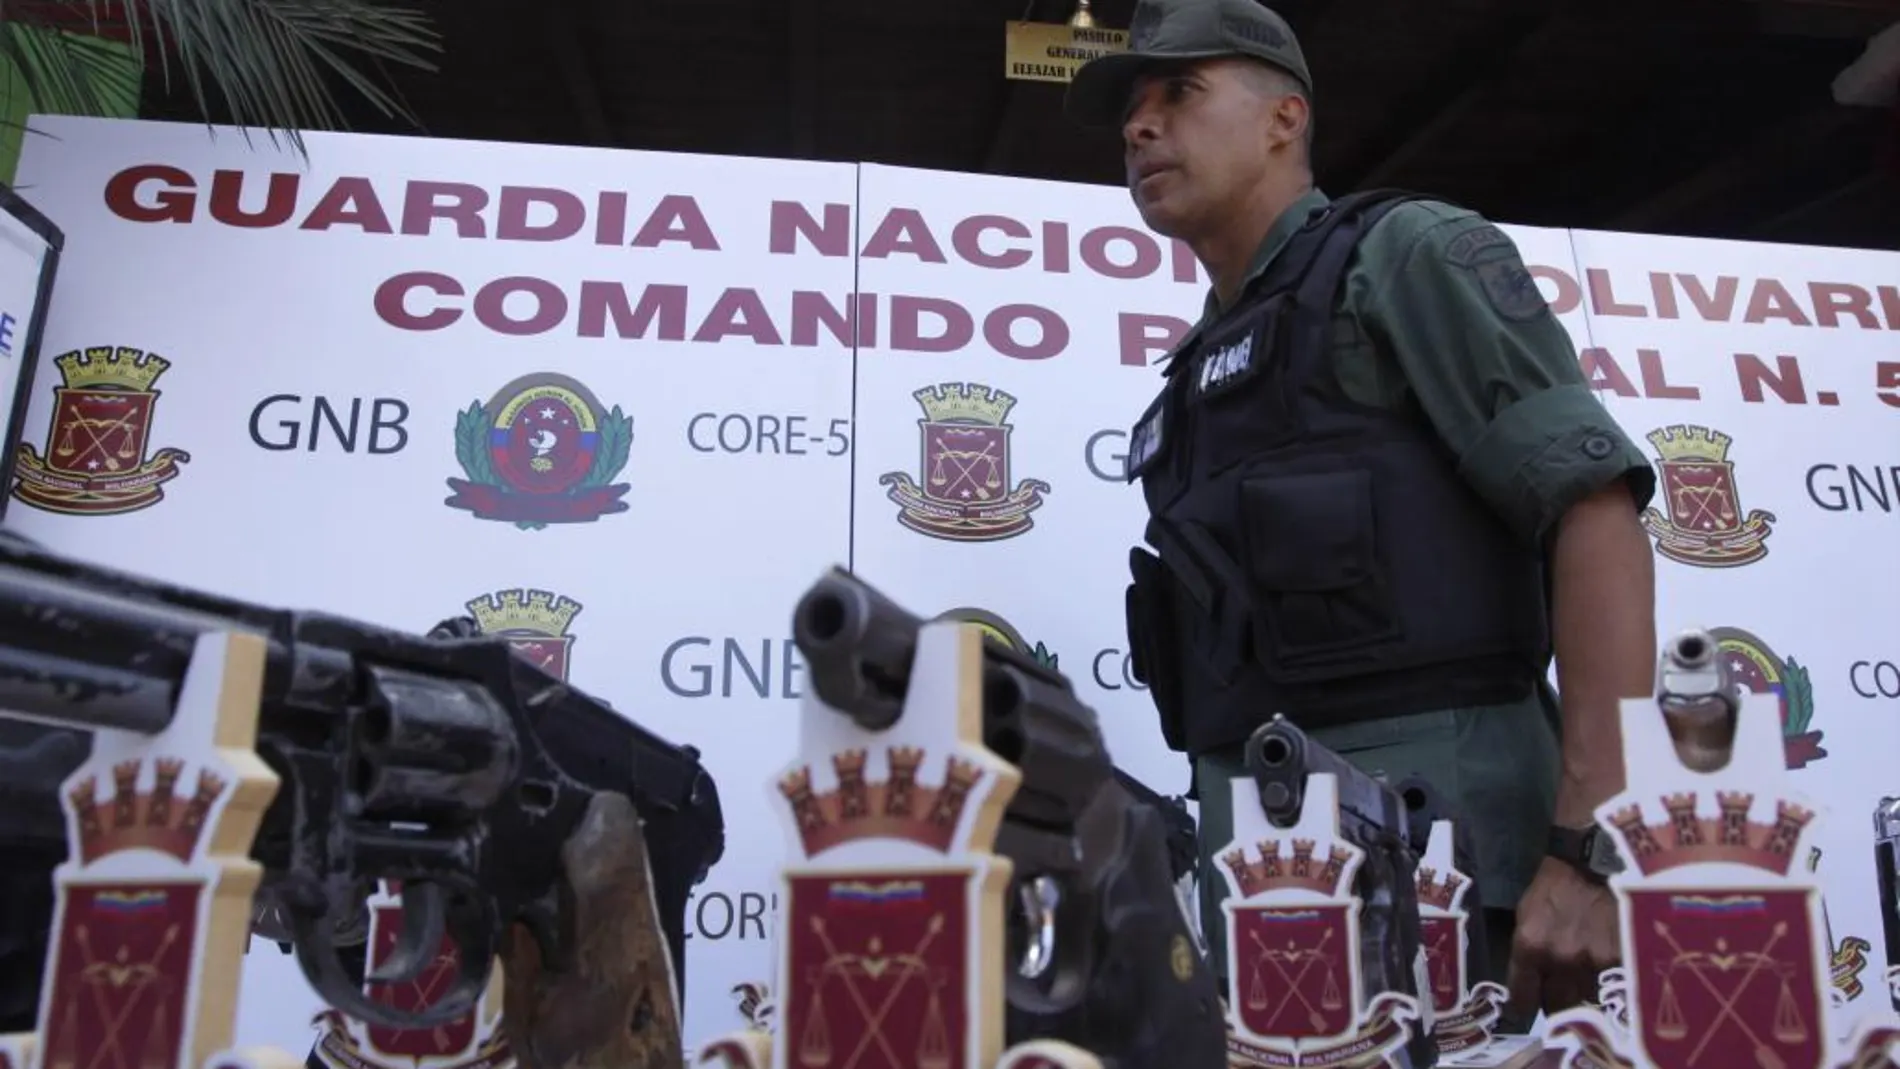 Fotografía del 16 de agosto de 2013, donde se observa al exdirector de Operaciones de la Guardia Nacional Bolivariana (GNB), Antonio José Benavides Torres